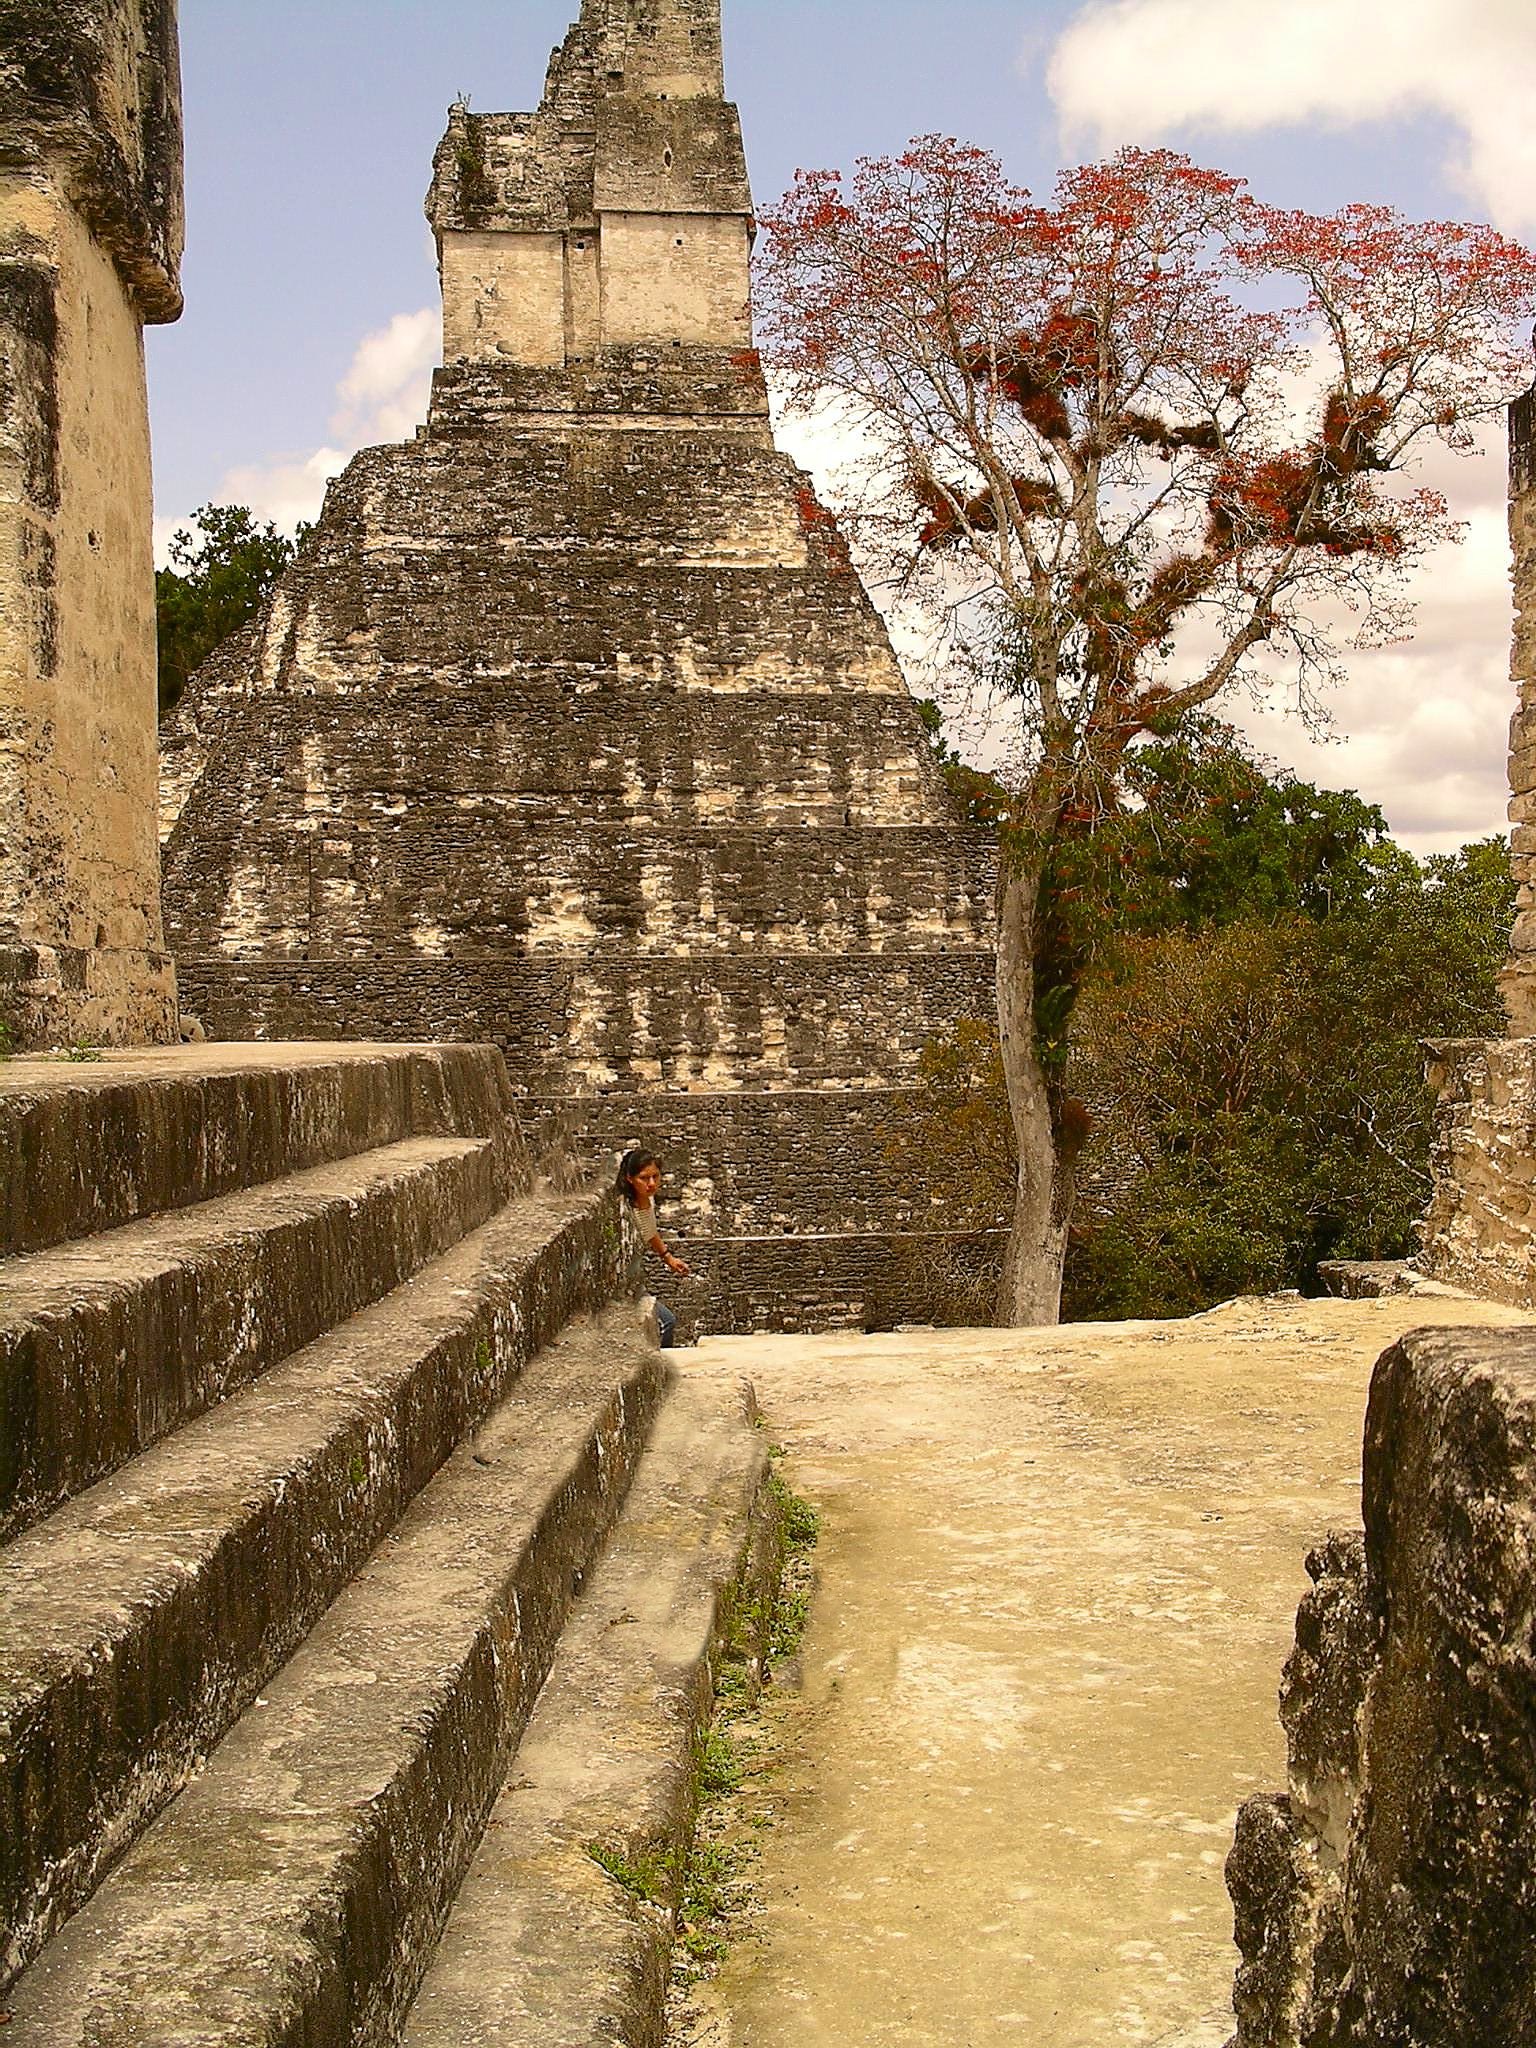 Ceiba Tree or Yaaxch in the Maya Language